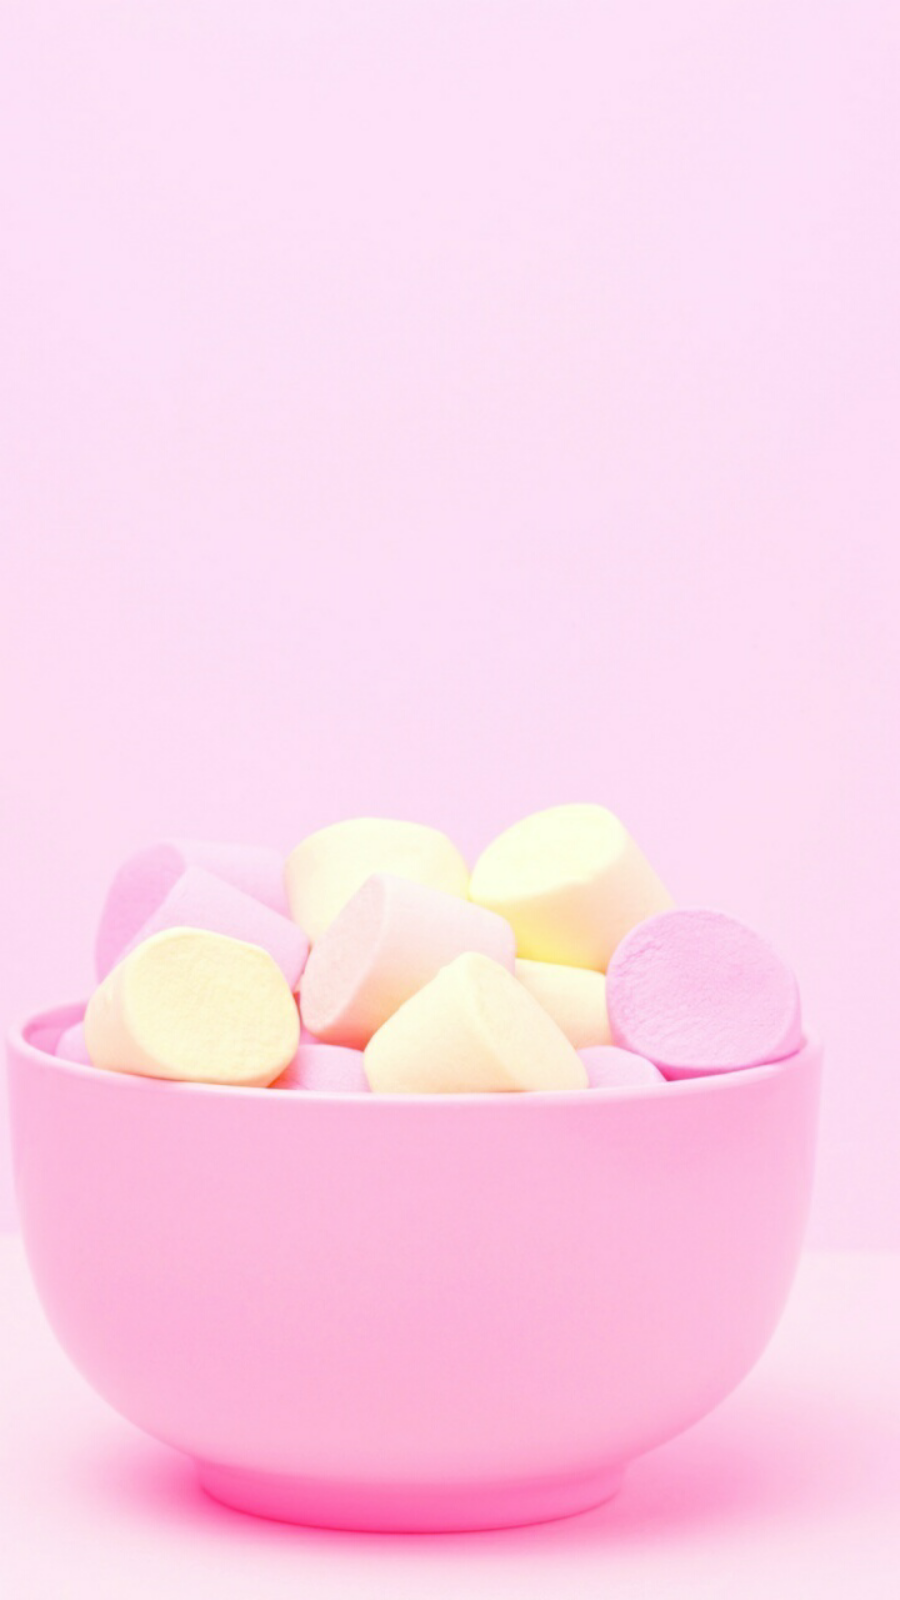 Enjoy a delicious marshmallow today!